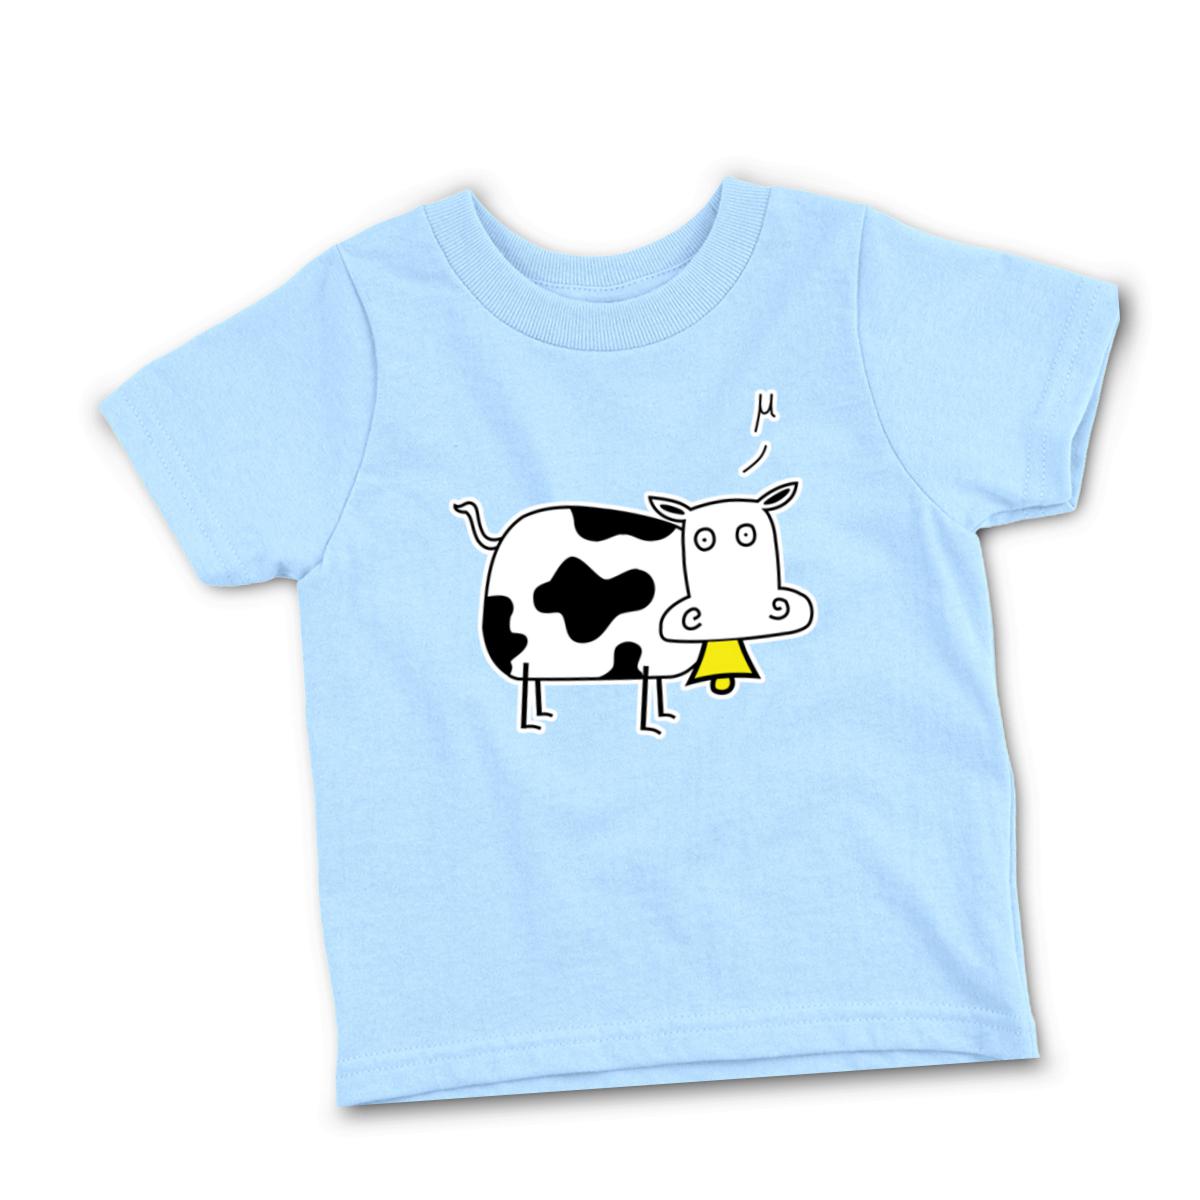 Mu Cow Toddler Tee 2T light-blue